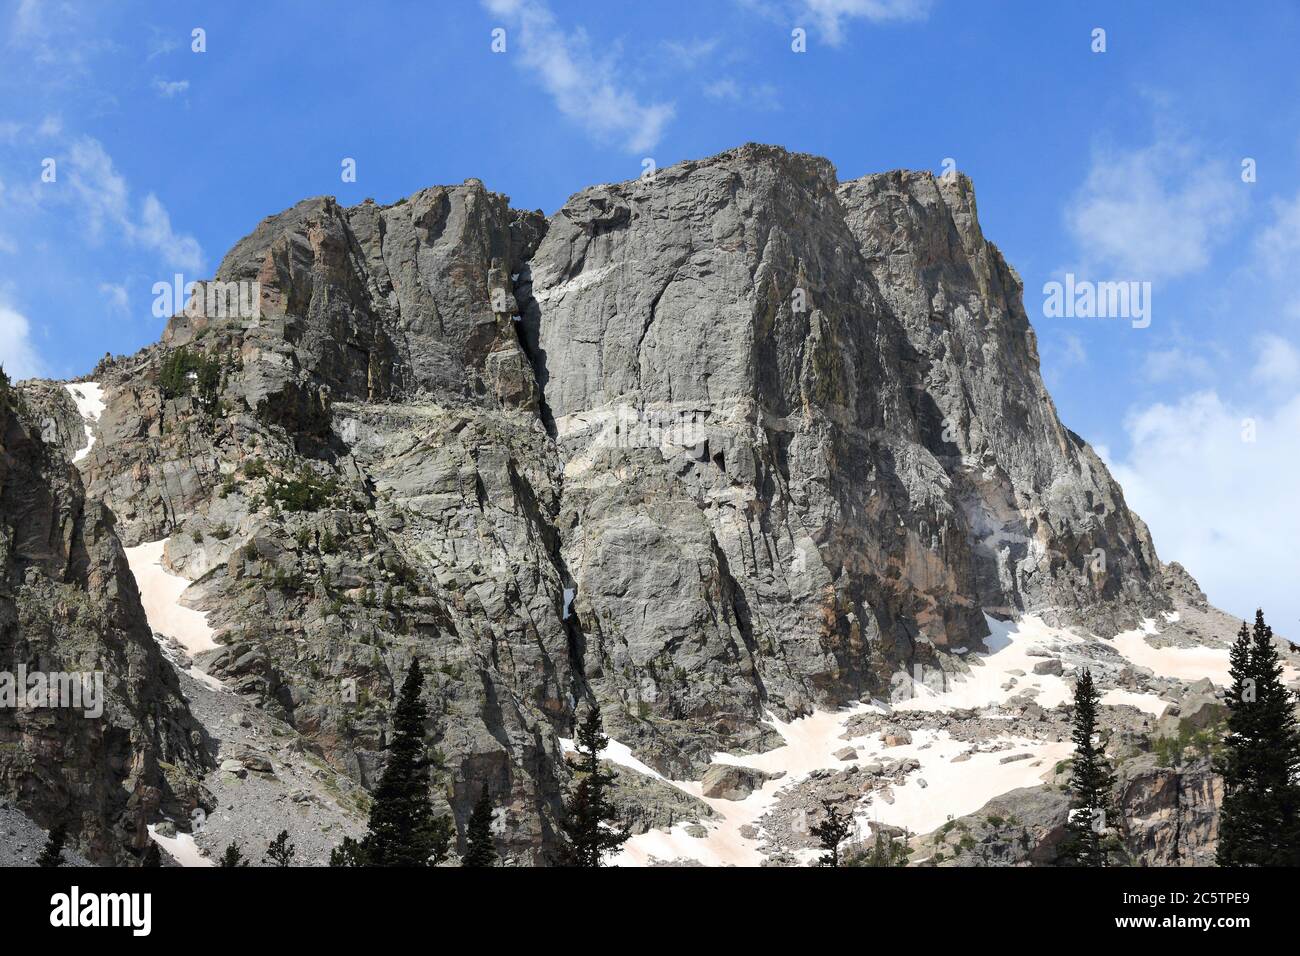 Rocky Mountain National Park in Colorado, USA. Flattop Mountain peak. Stock Photo